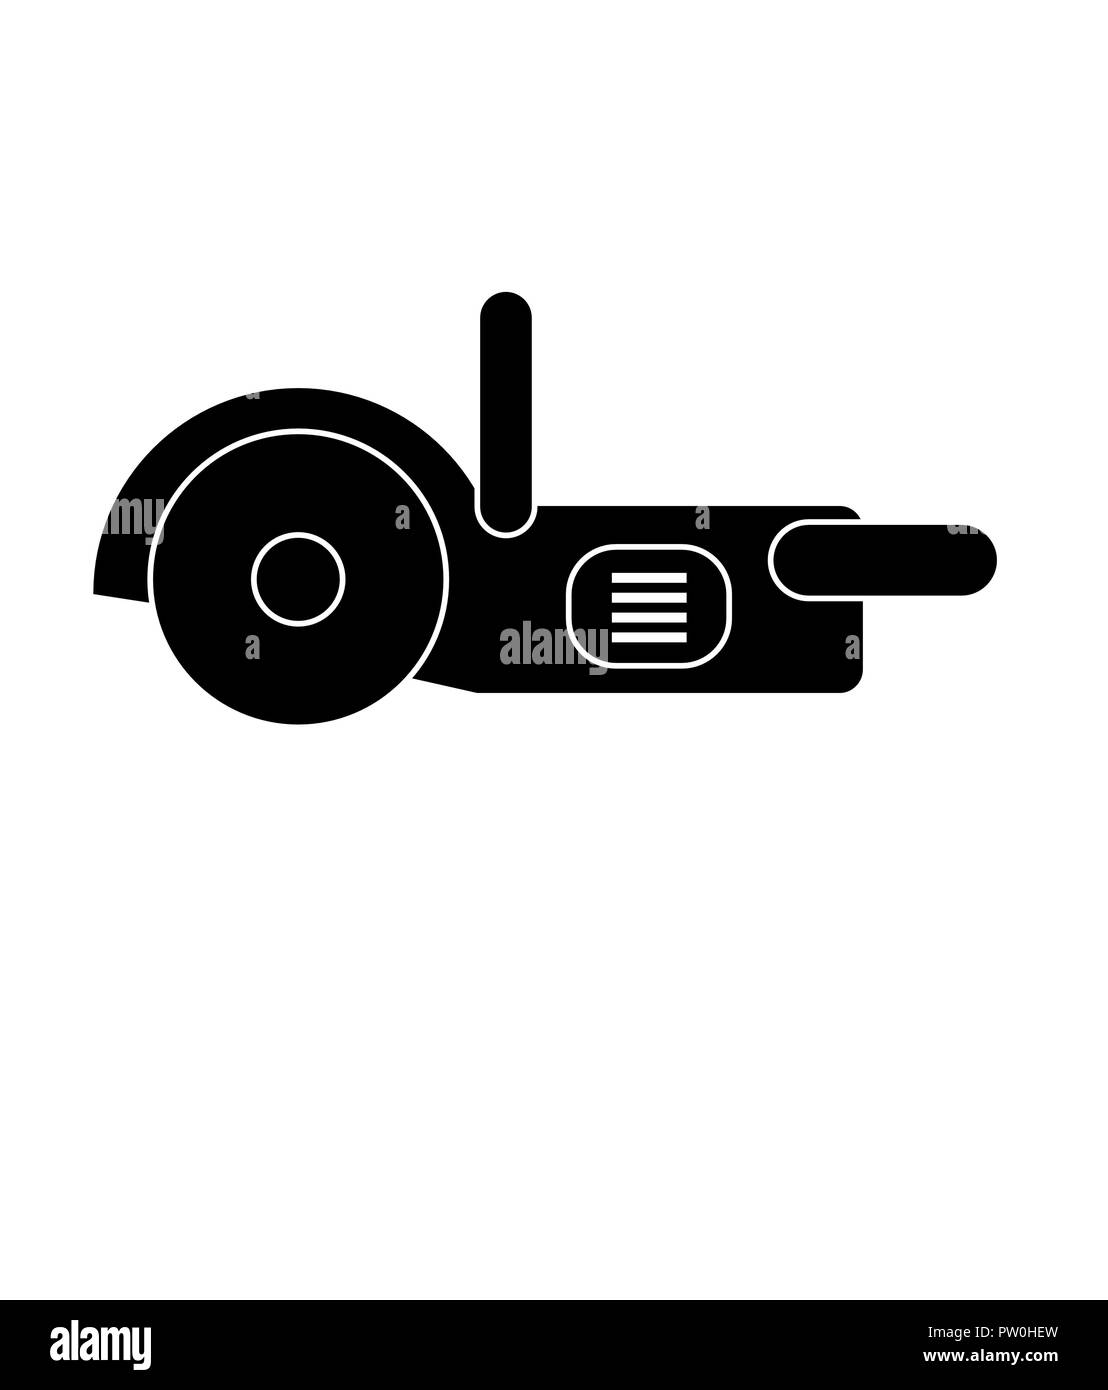 Kreissäge vector, isoltaed in Schwarz und Weiß, perfekt für ein Zeichen in einem Geschäft oder t-shirt Logo Stock Vektor